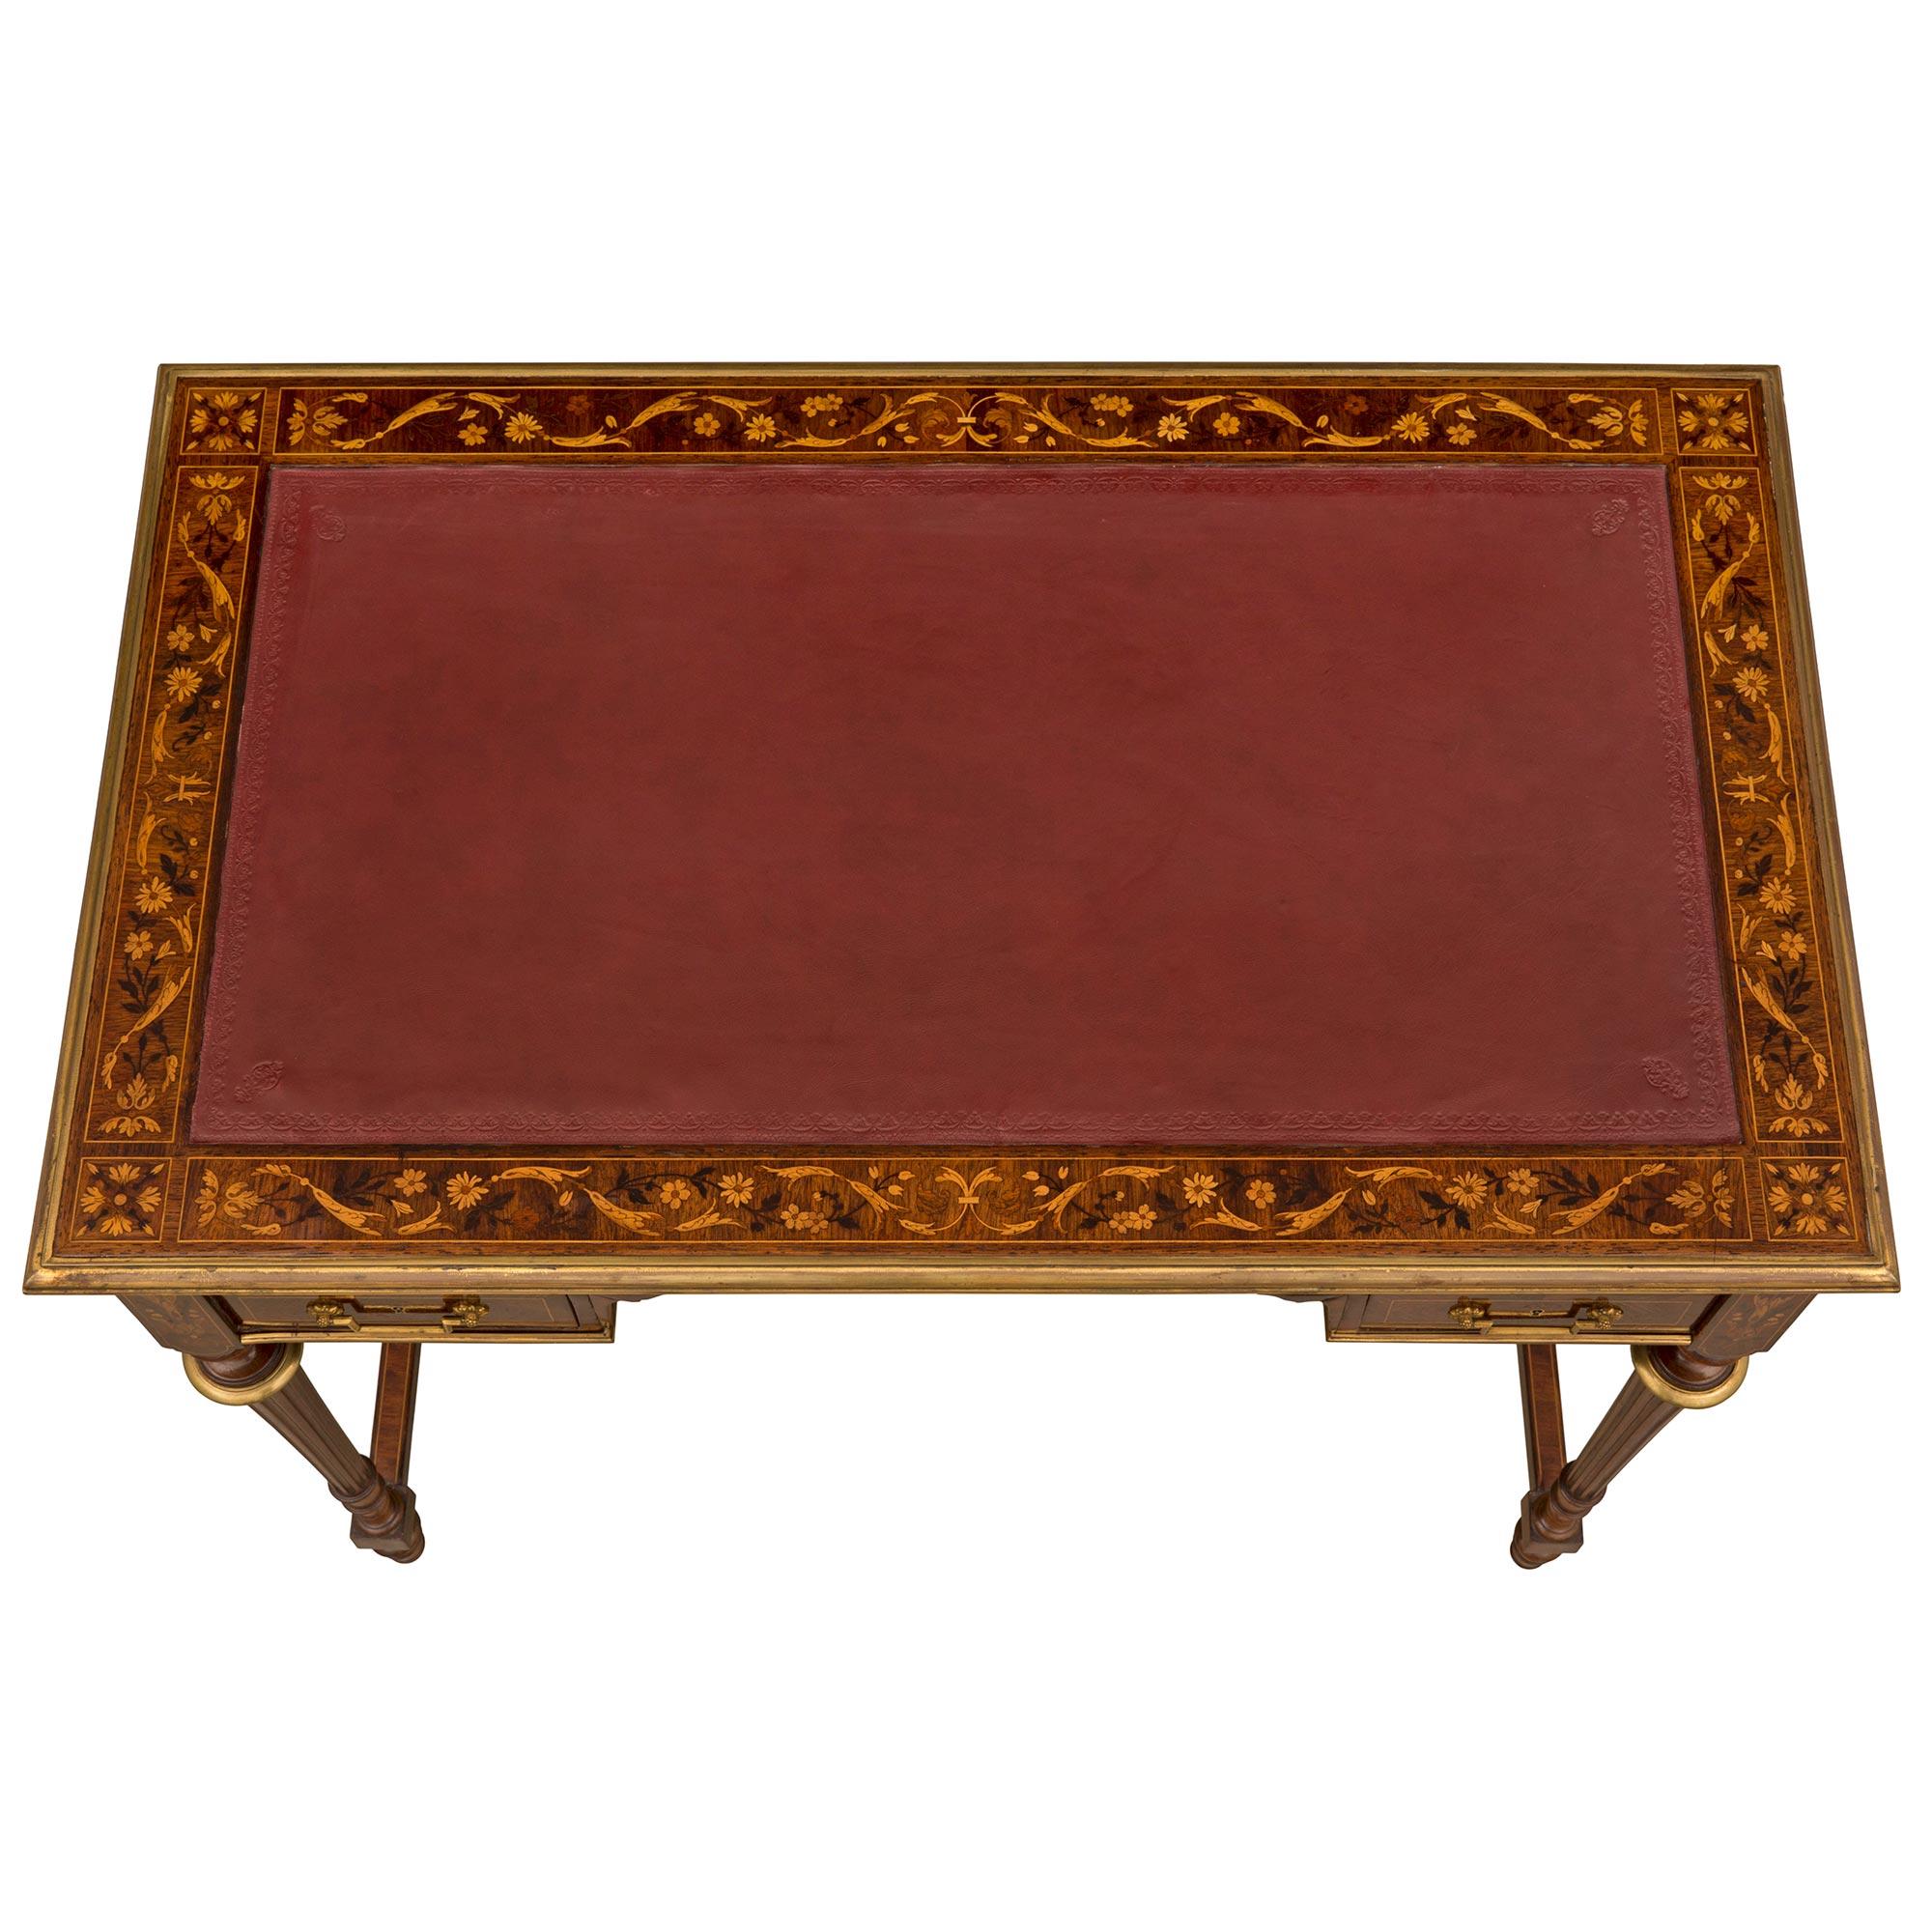 Ein eleganter und sehr hochwertiger englischer Schreibtisch aus dem frühen 19. Jahrhundert aus Königsholz, Tulipwood und Ormolu, signiert HOBBS. Der Schreibtisch mit fünf Schubladen wird von schönen und einzigartigen topieförmigen Füßen unter